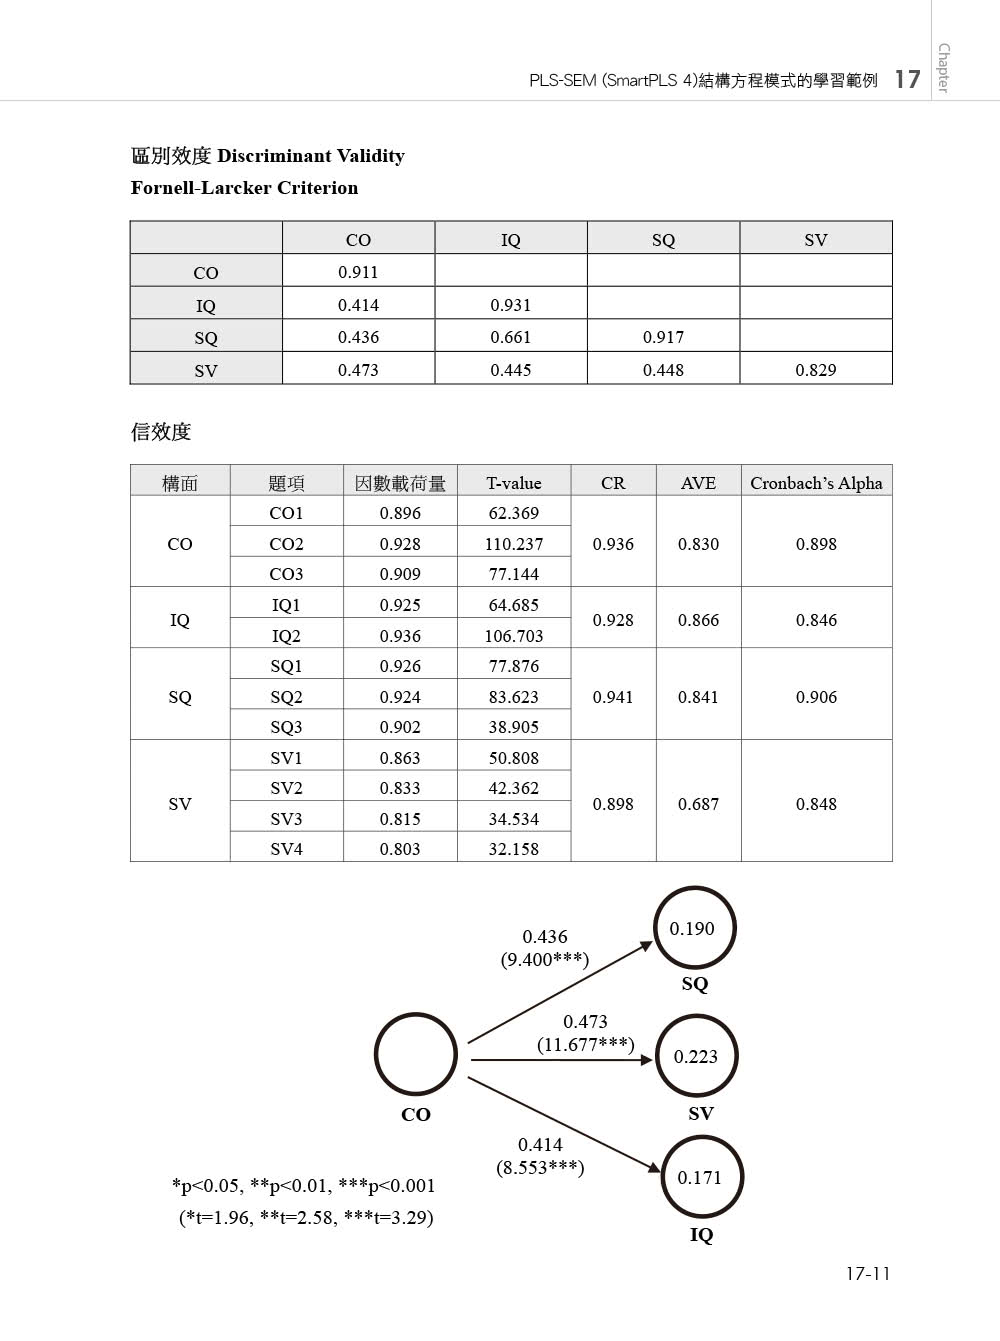 統計分析入門與應用--SPSS中文版+SmartPLS 4（PLS-SEM）第四版